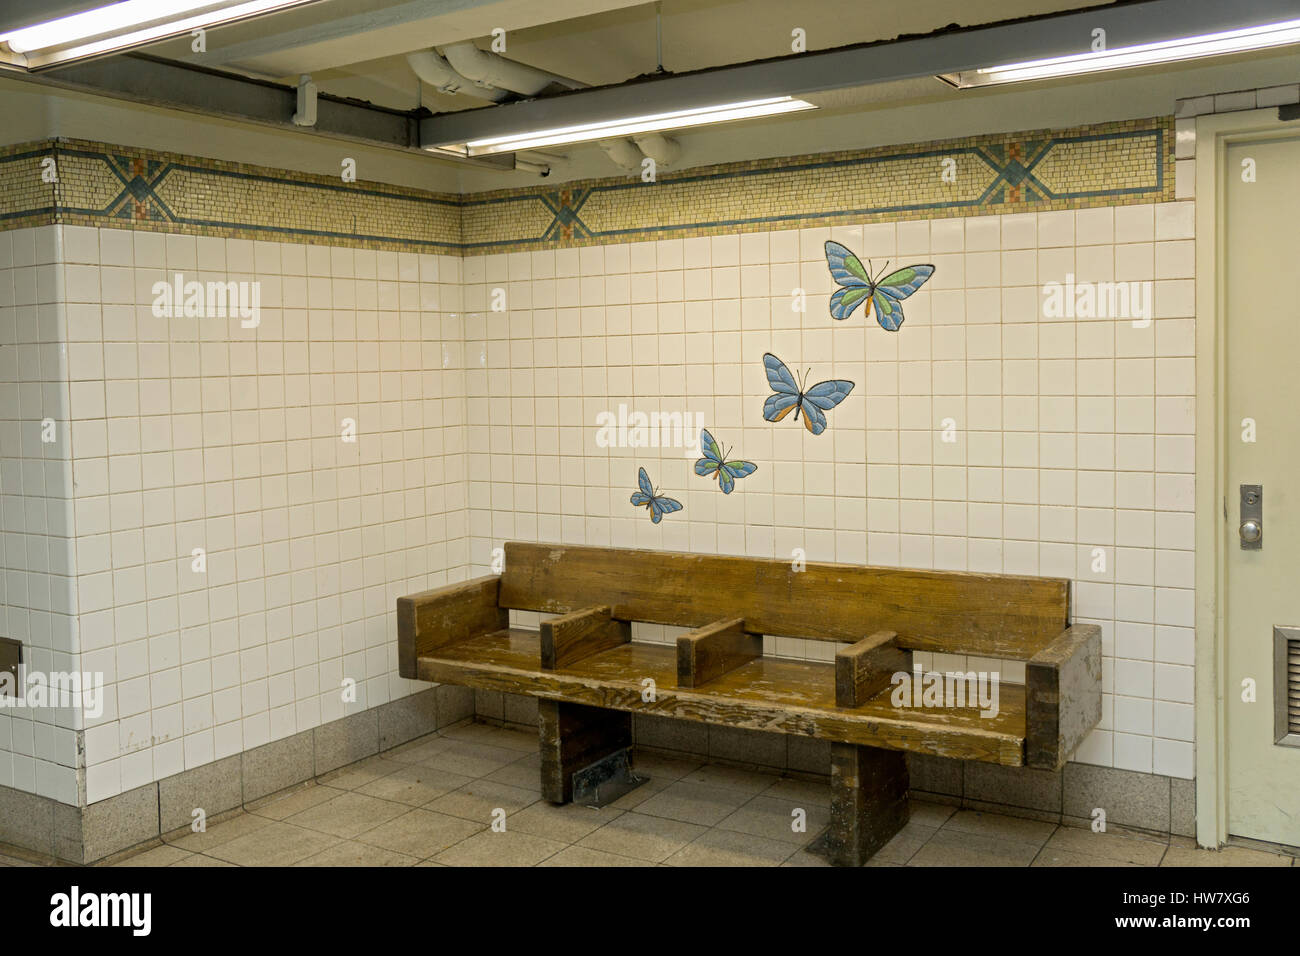 Arte Pubblica sul display in corrispondenza della Quinta Avenue e la 59th street linea R la stazione della metropolitana di New York City. Foto Stock